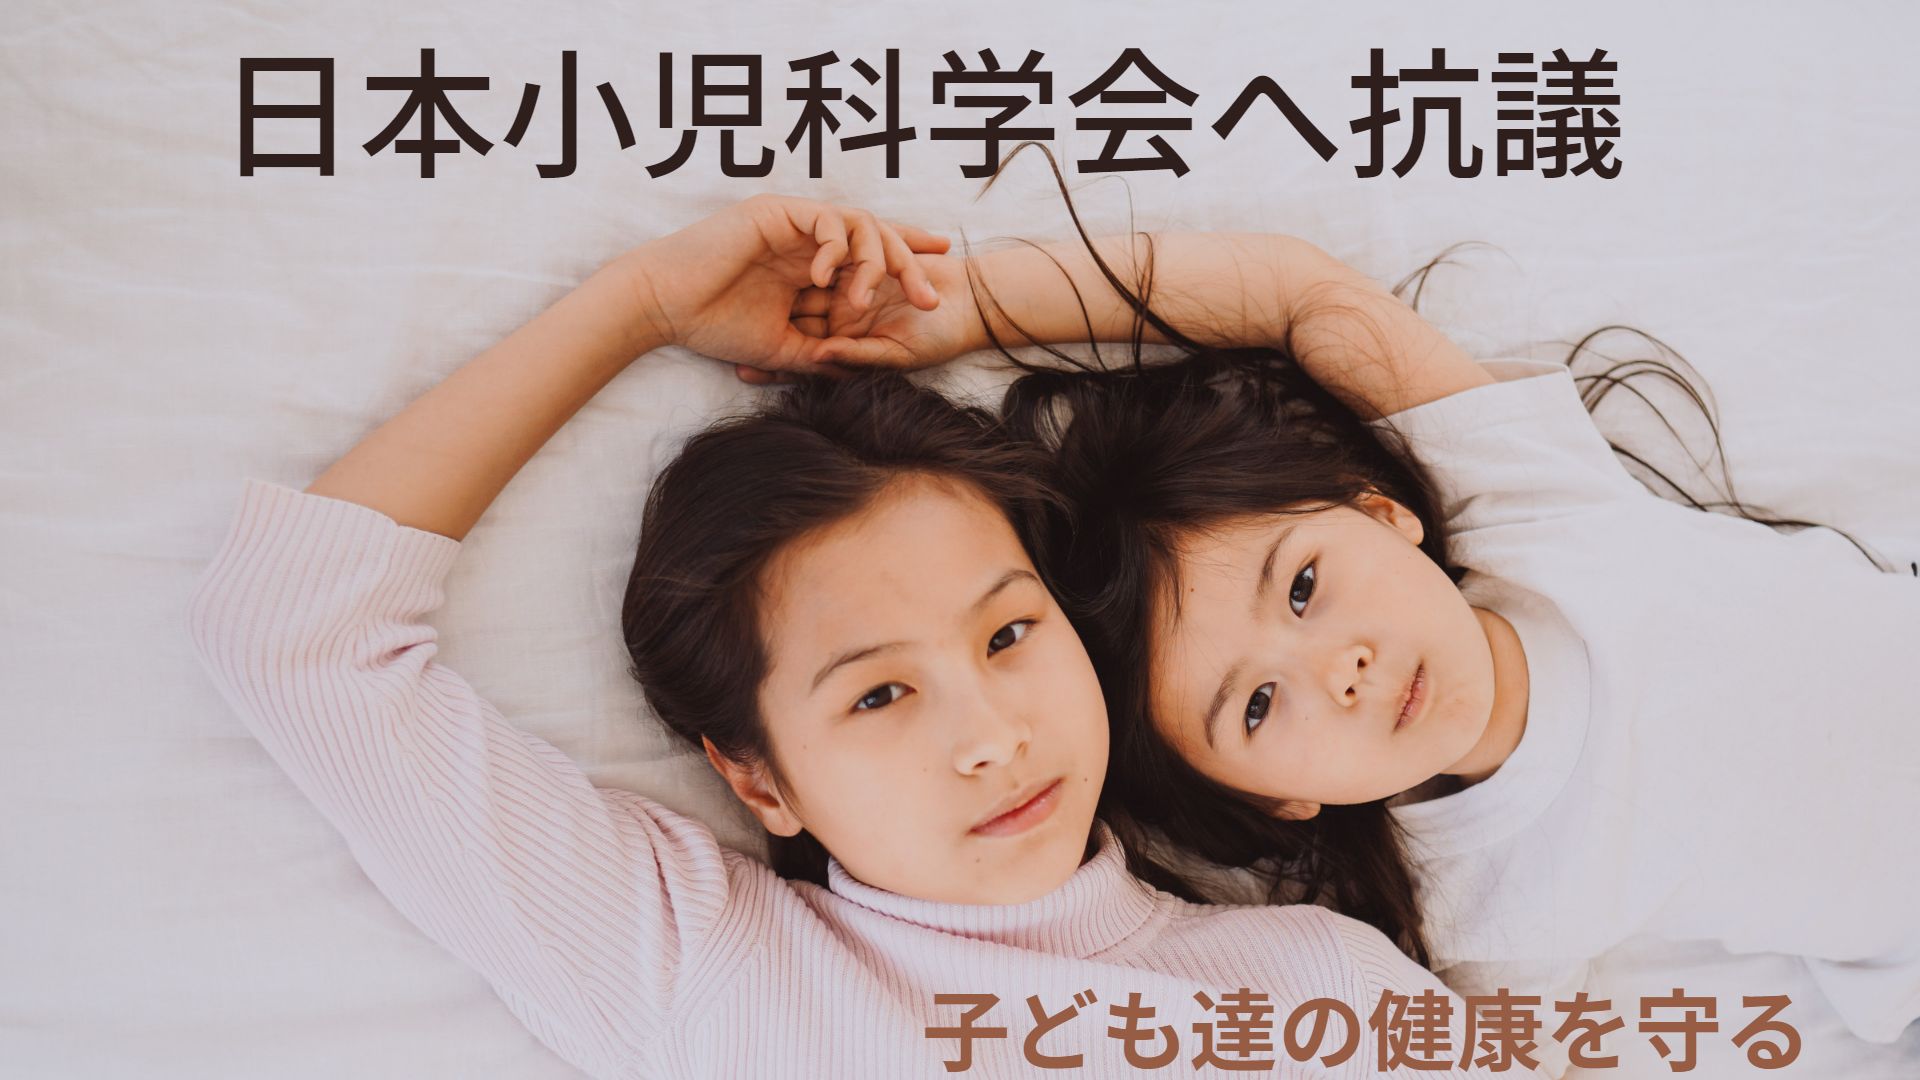 日本小児科学会による「すべての小児への新型コロナワクチン接種推奨」に強く抗議します（6月24日小児科学会へ抗議文郵送）